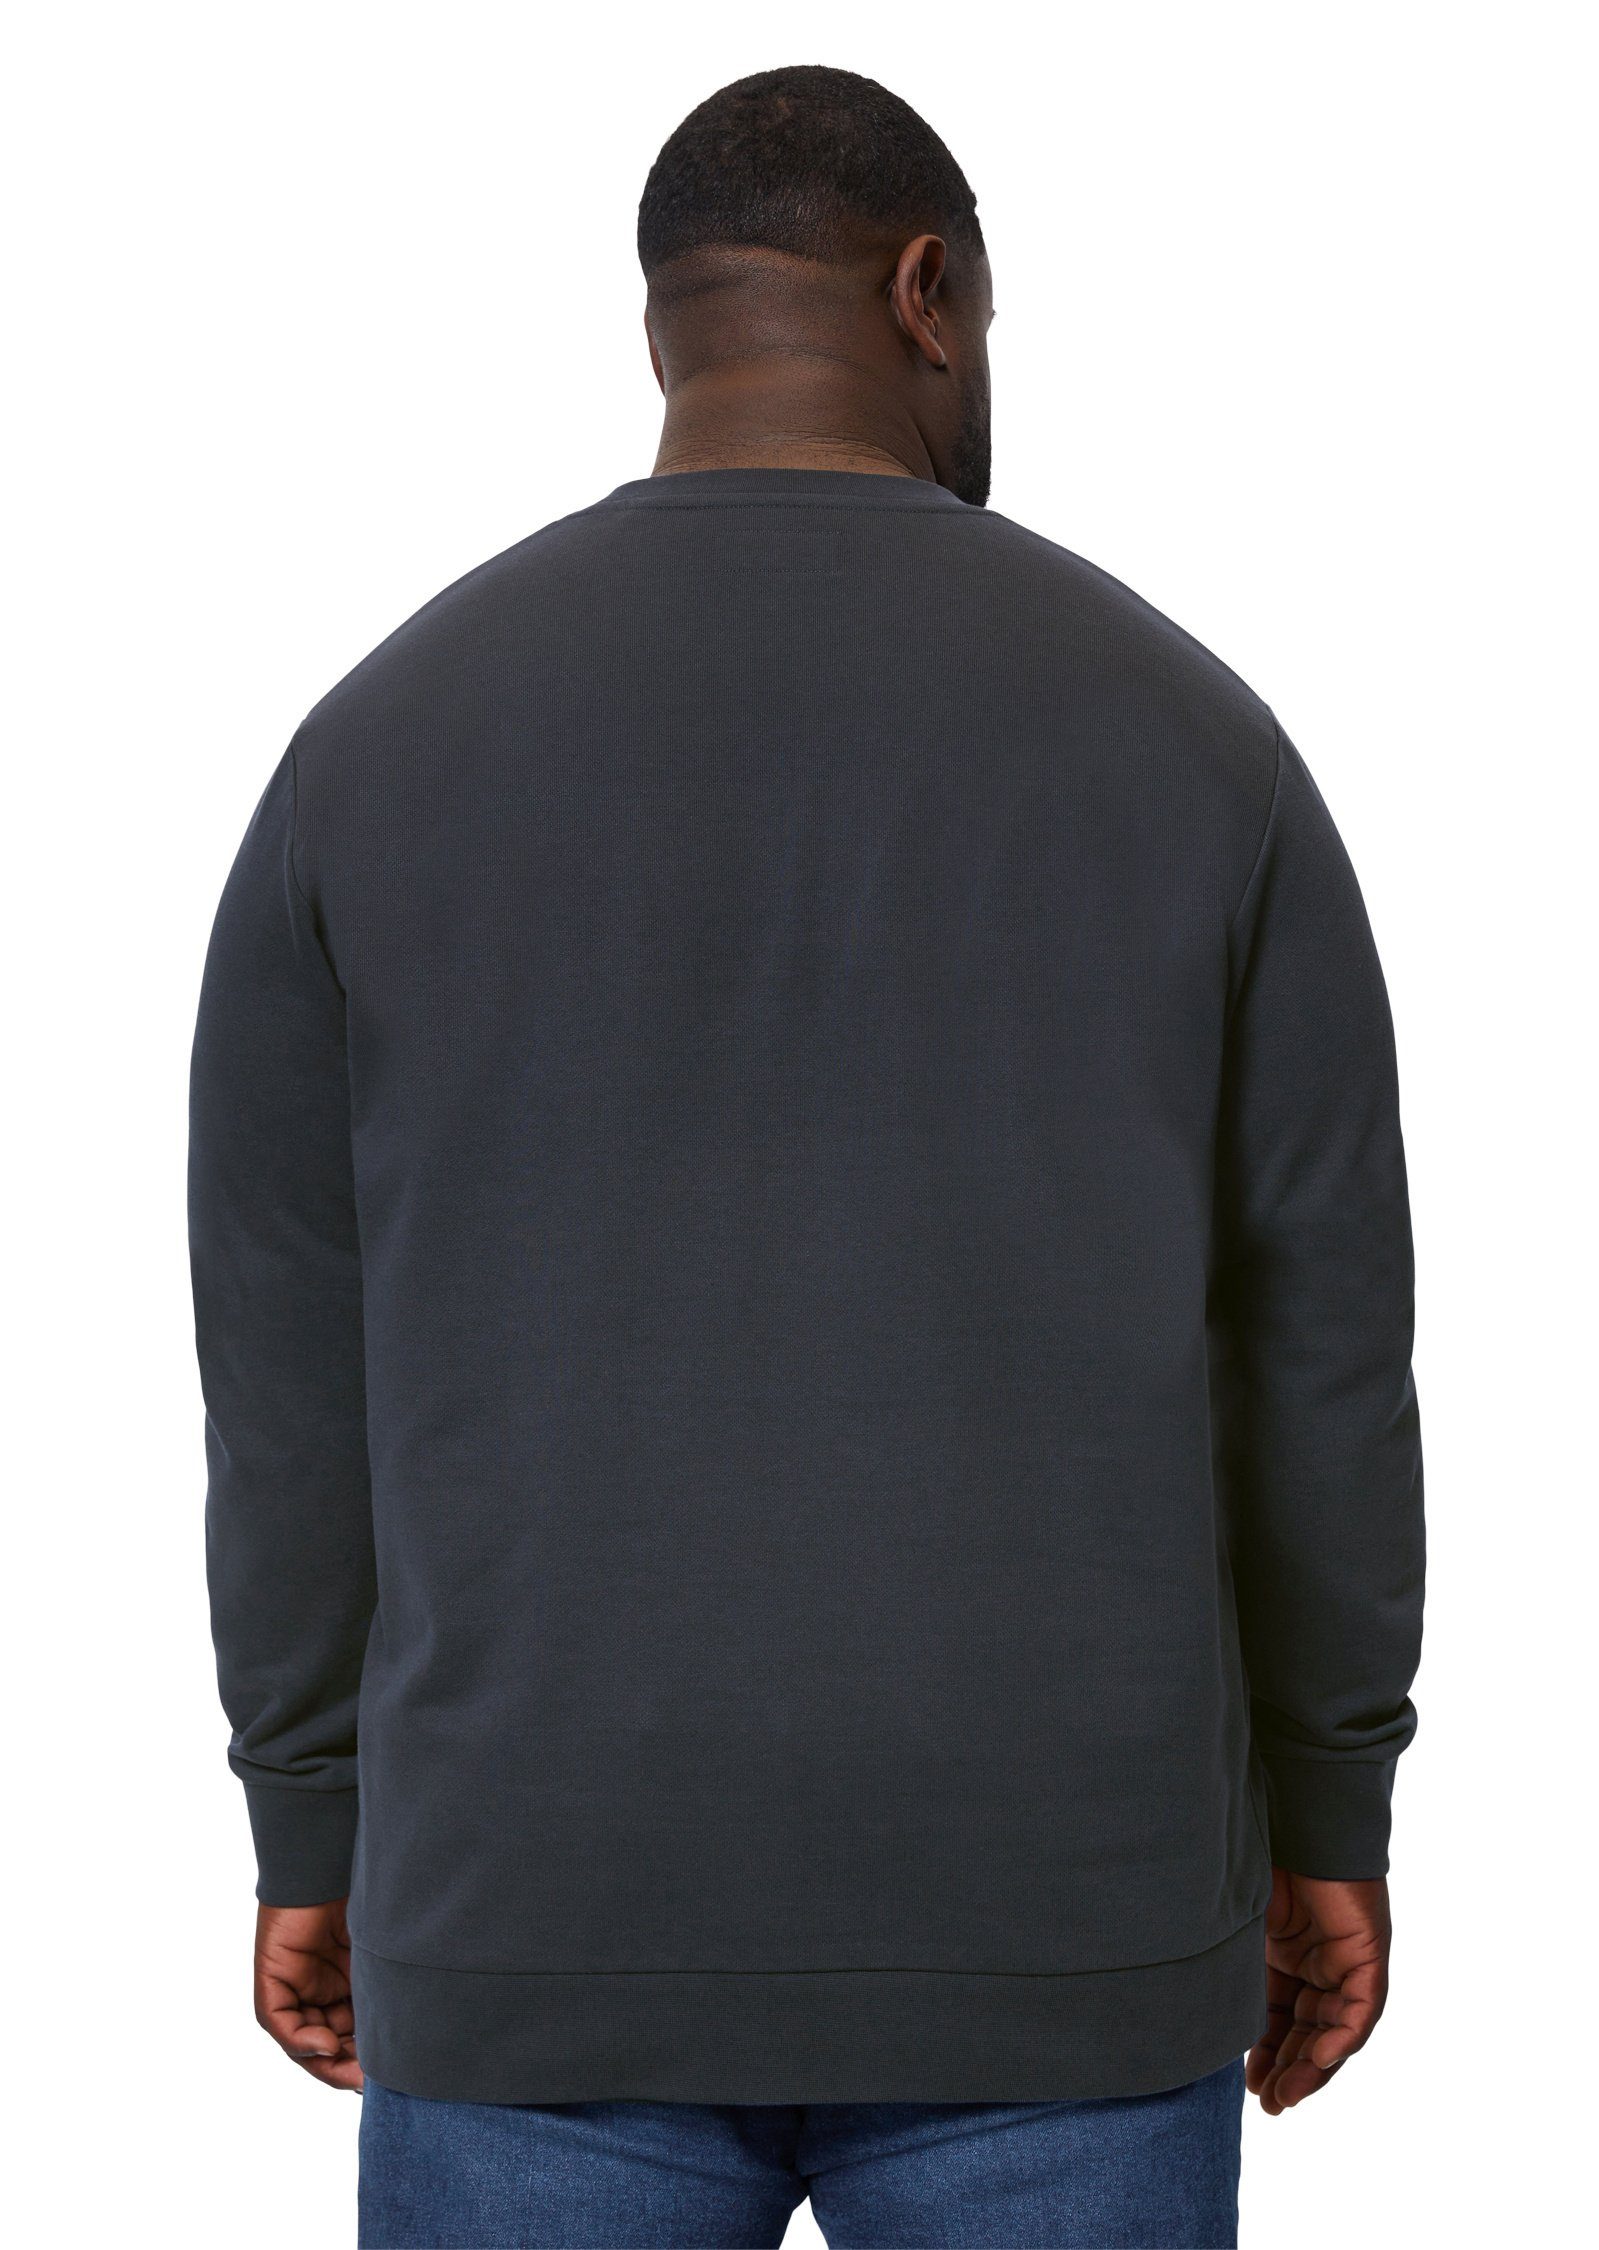 Bio-Baumwolle aus Marc dunkelblau reiner O'Polo Sweatshirt